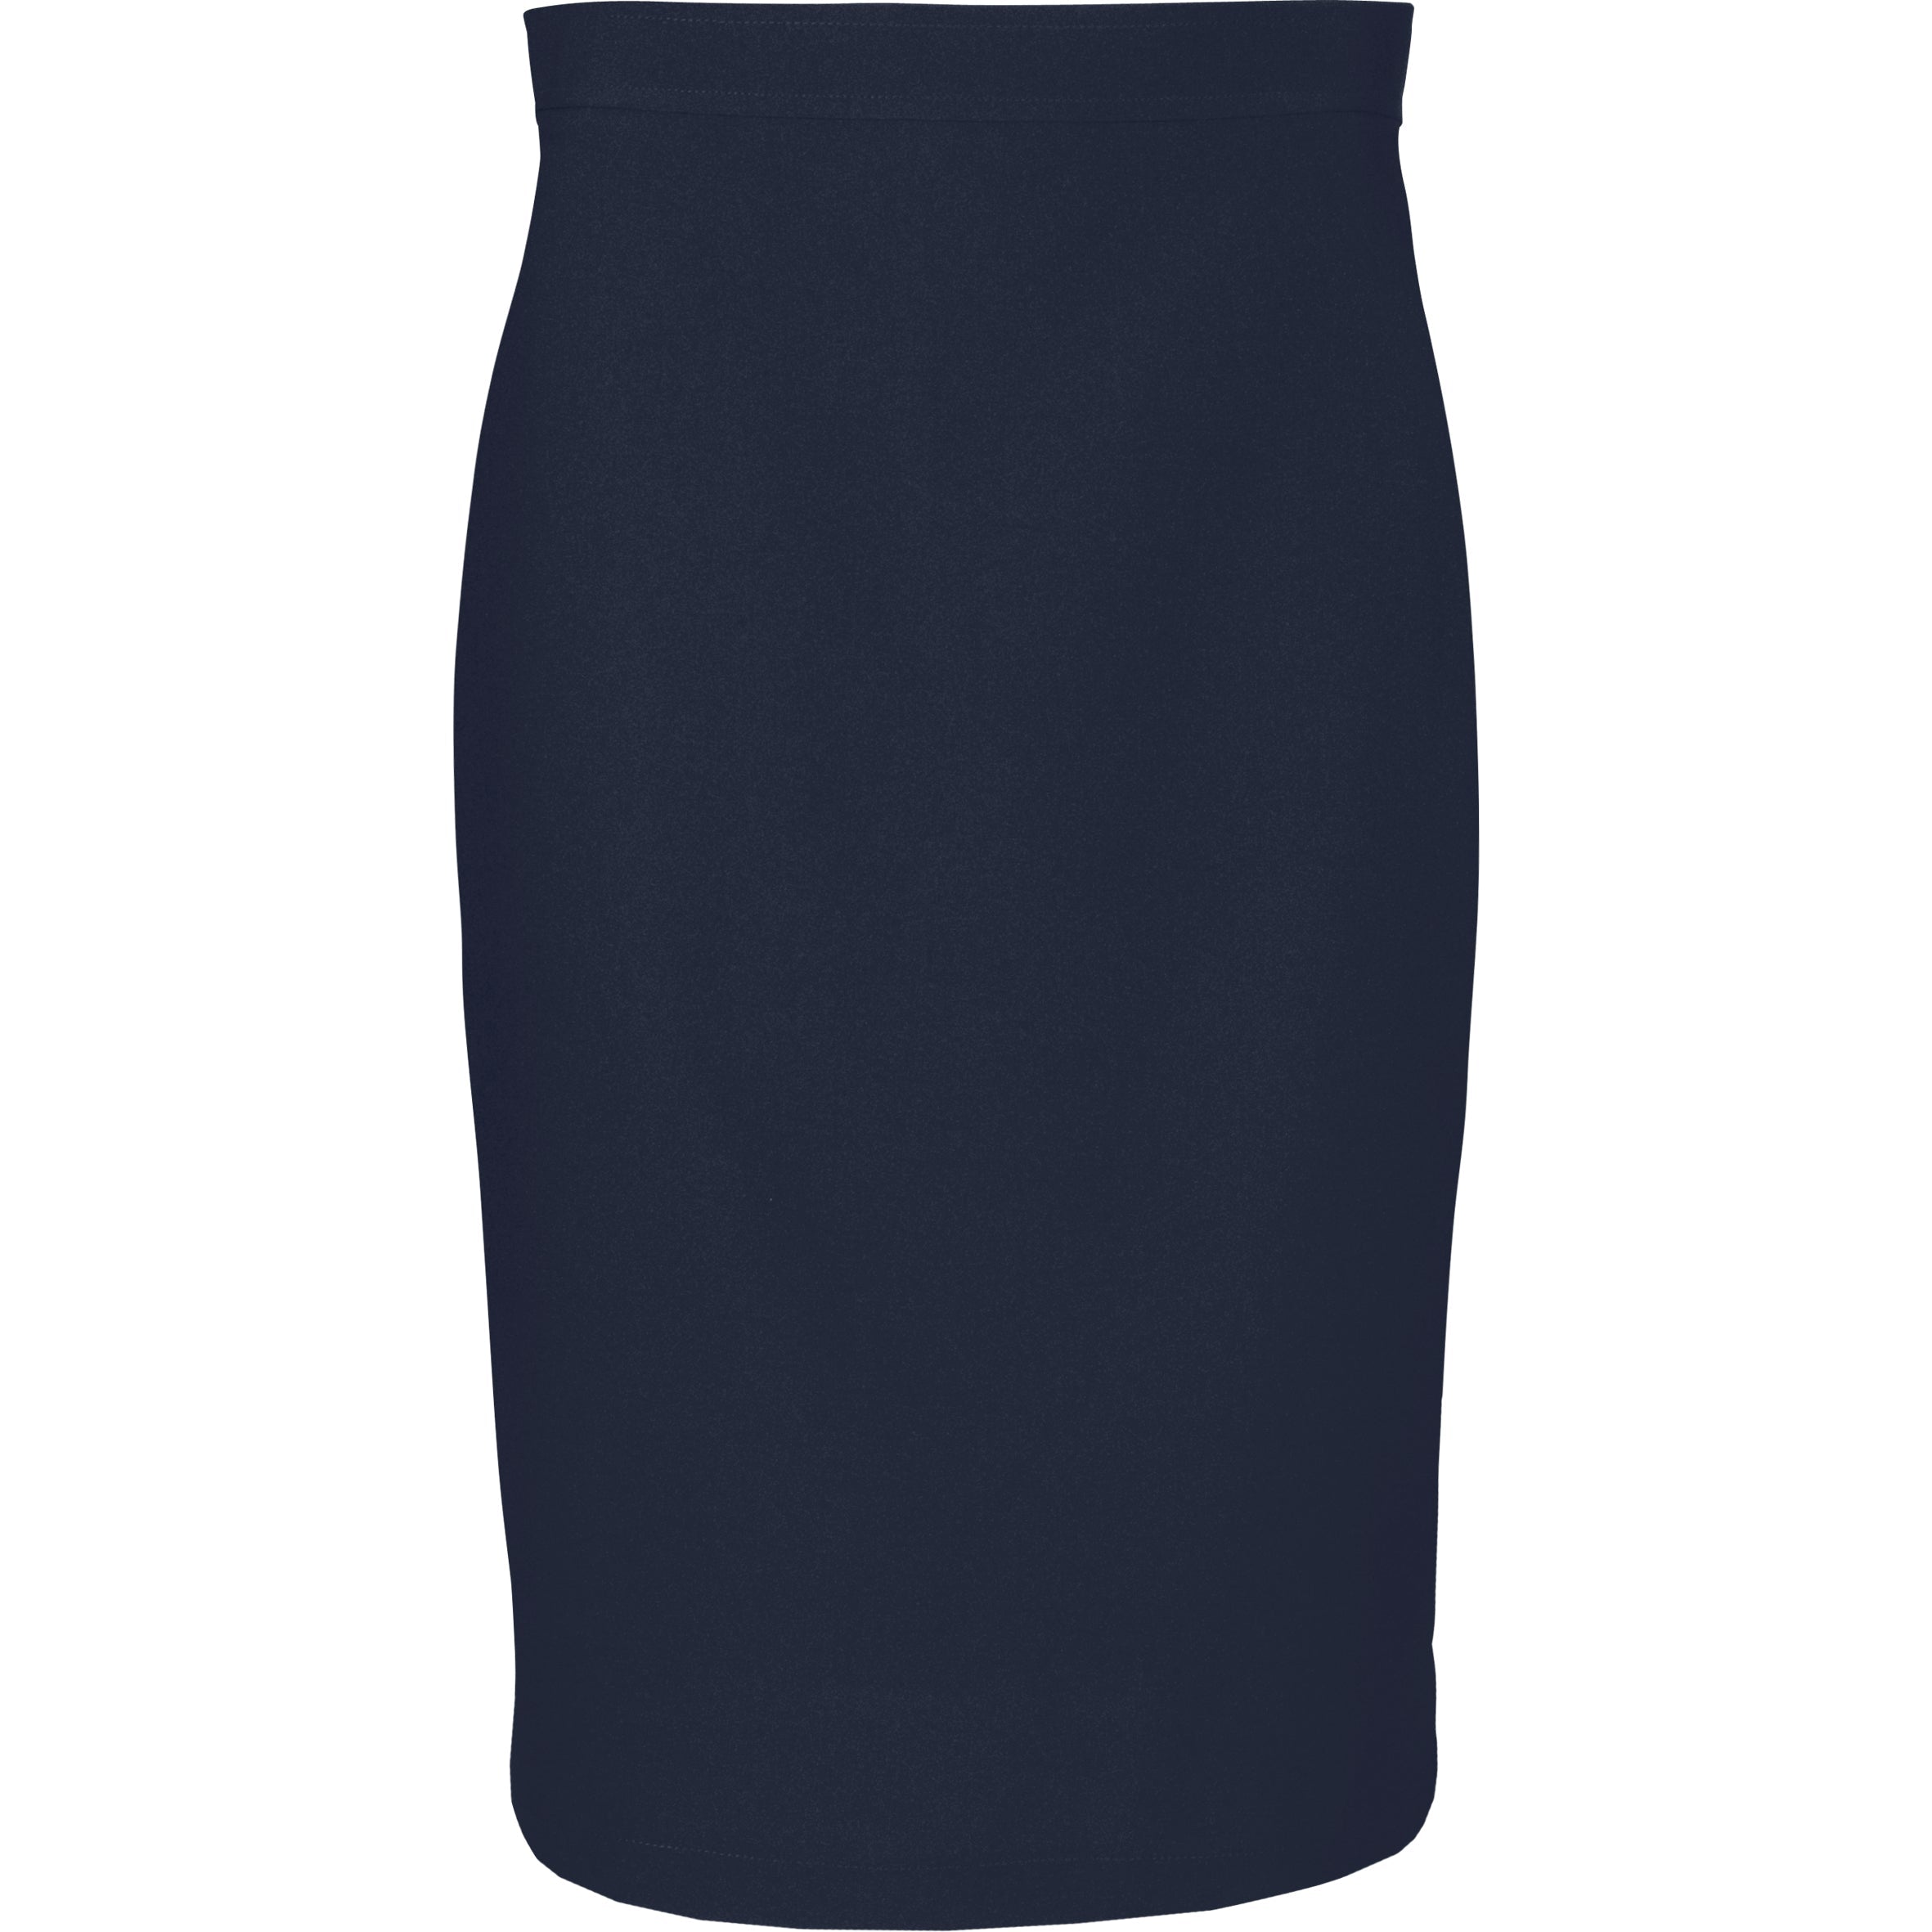 Ladies Cambridge Skirt - Black Only-30-Navy-N